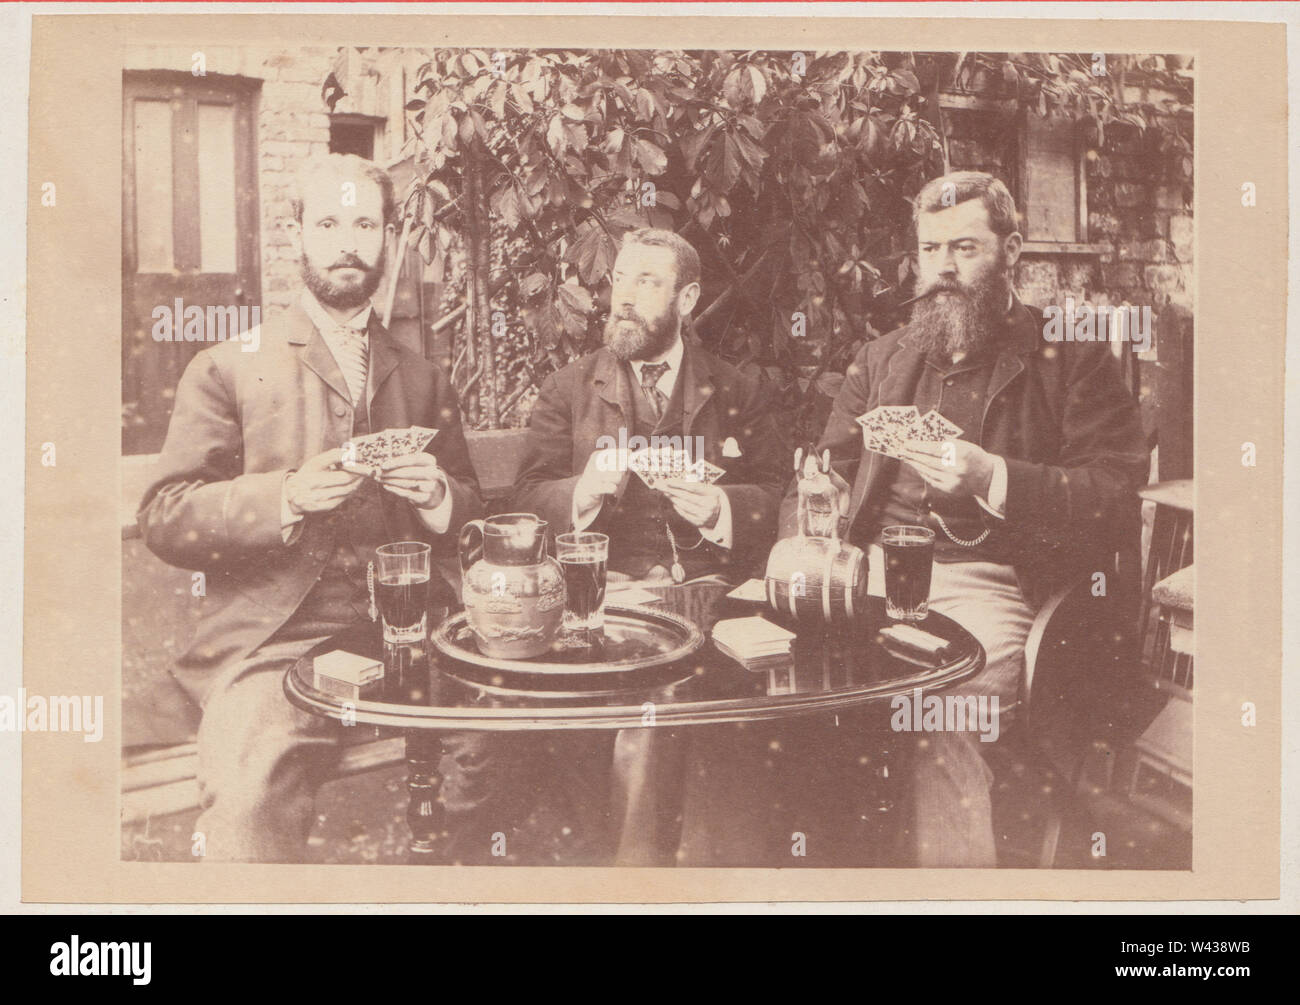 Armadio vittoriano Card che mostra un gruppo di tre uomo barbuto seduto fuori ad un tavolo. Gli uomini sono le carte da gioco (gioco d'azzardo) e il consumo di alcol. Foto Stock